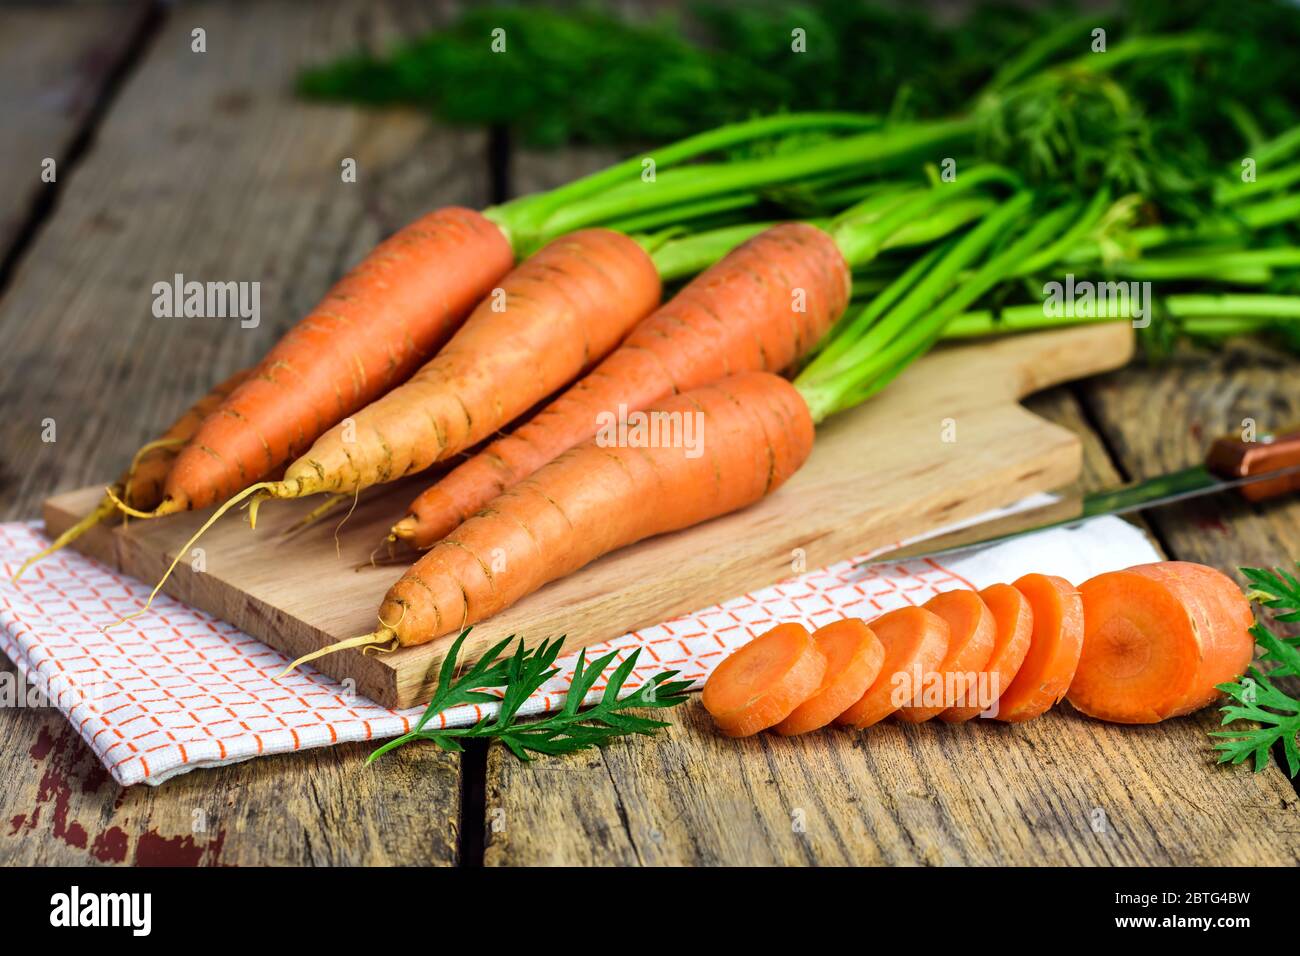 Carote fresche e carote affettate su una lavagna di legno con coltello, panno e tagliere. Messa a fuoco selettiva. Foto Stock